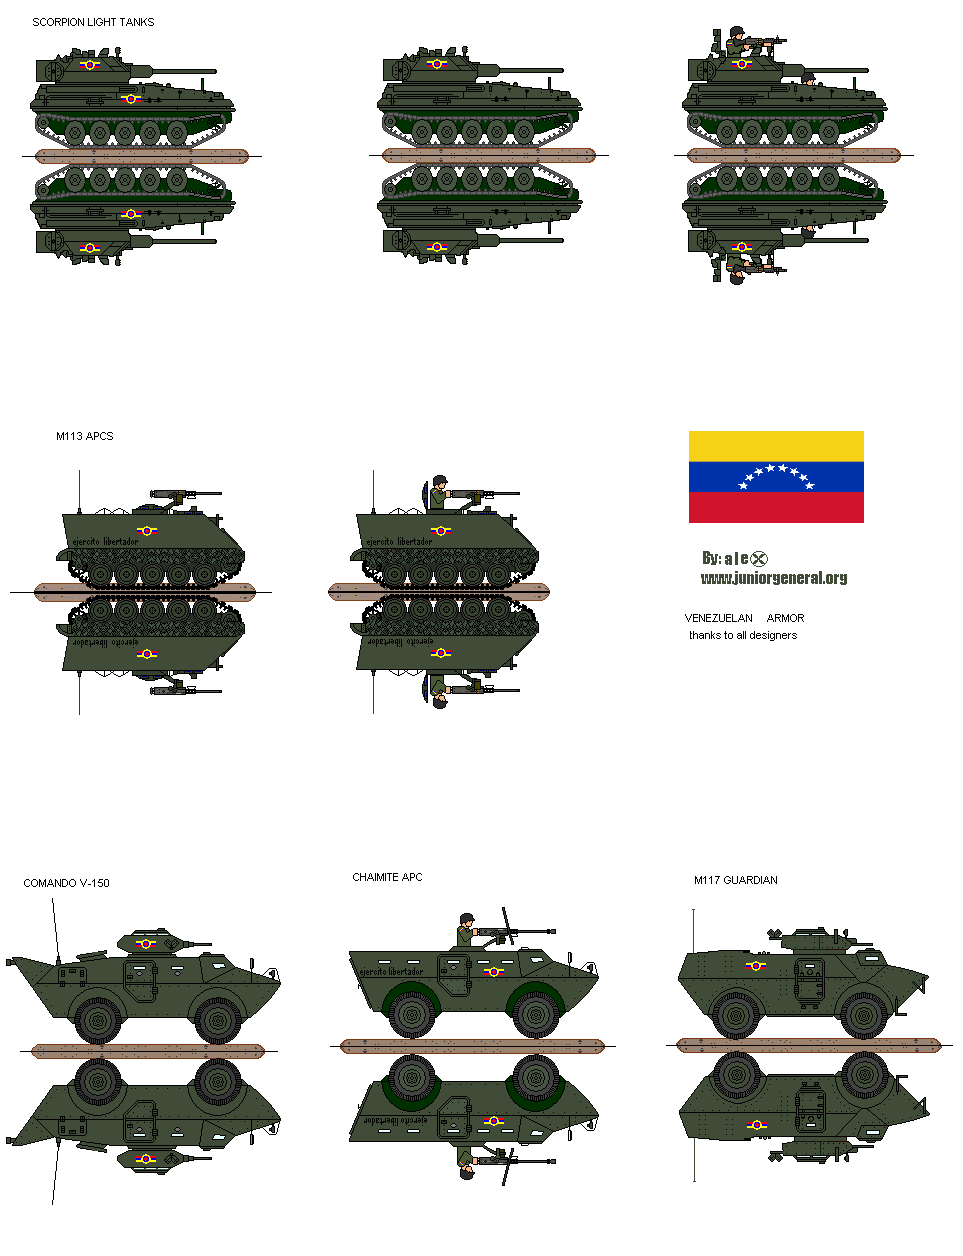 Venezuelan Armor